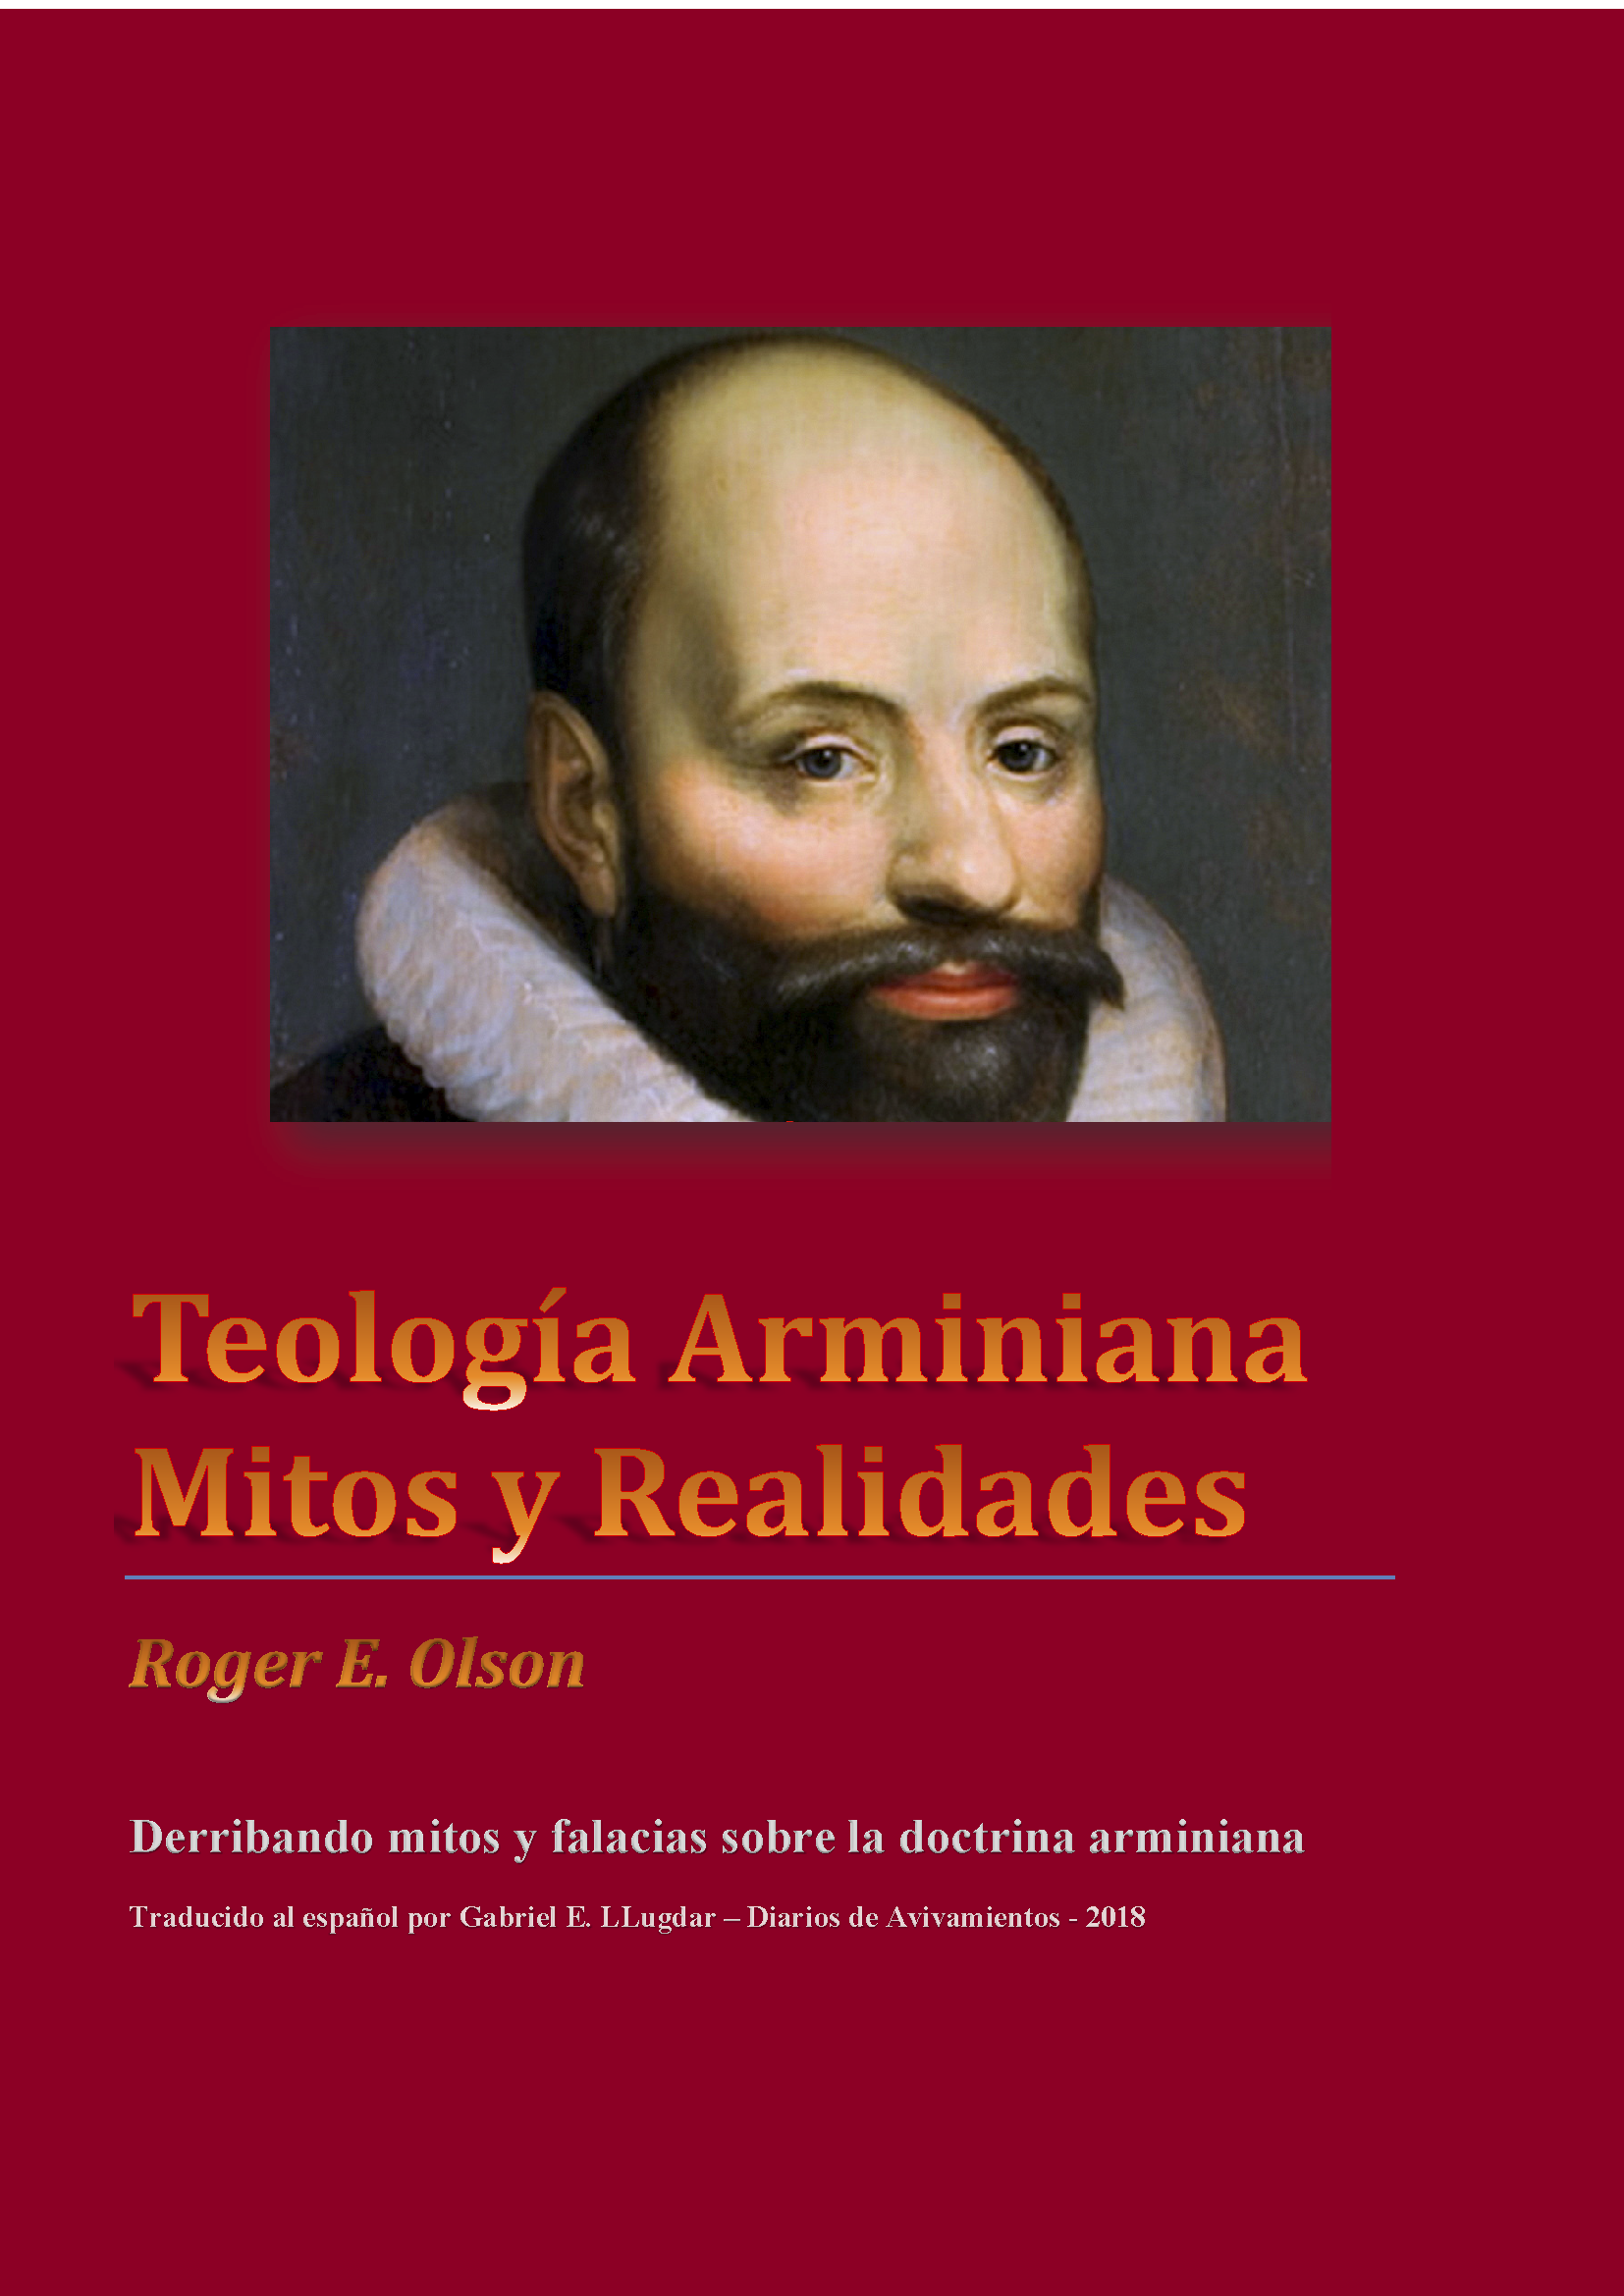 Teologia Arminiana - Mitos y Realidades - Diarios de Avivamientos.png